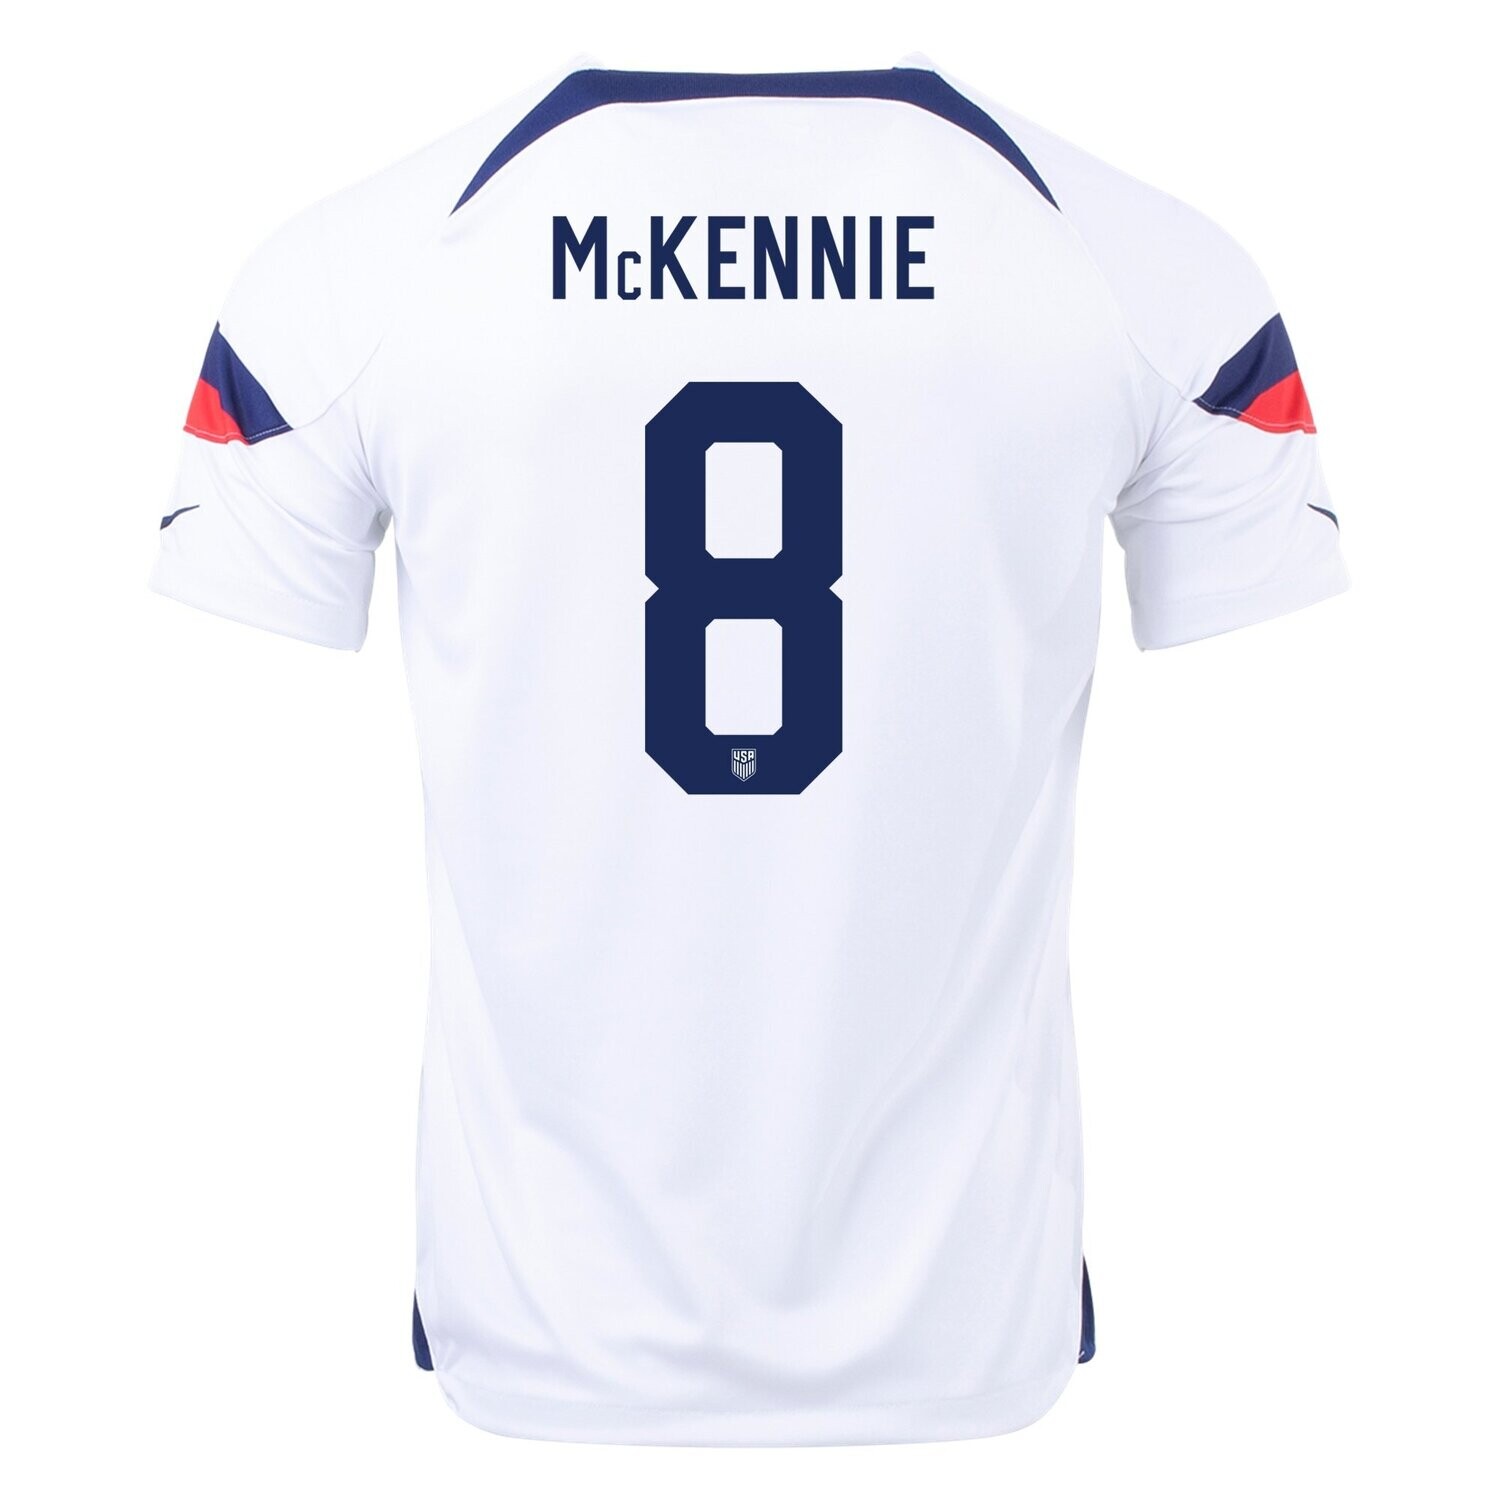 USMNT Home World Cup 2022 Soccer Jersey McKennie #8